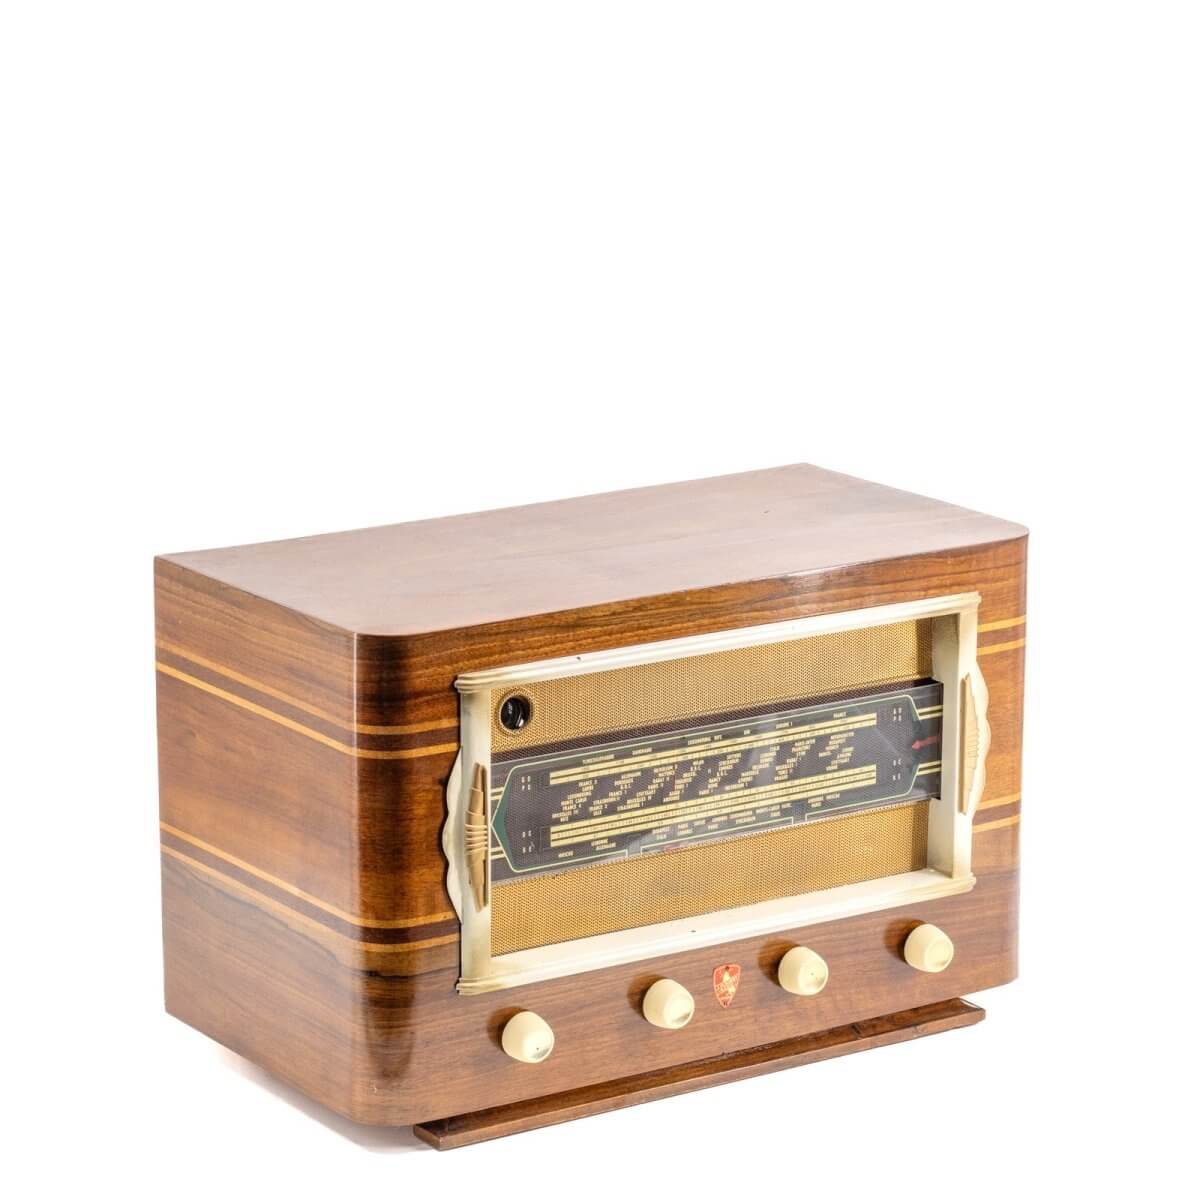 Radio Bluetooth Fleriet Vintage 40’S enceinte connectée française haut de gamme prodige radio vintage